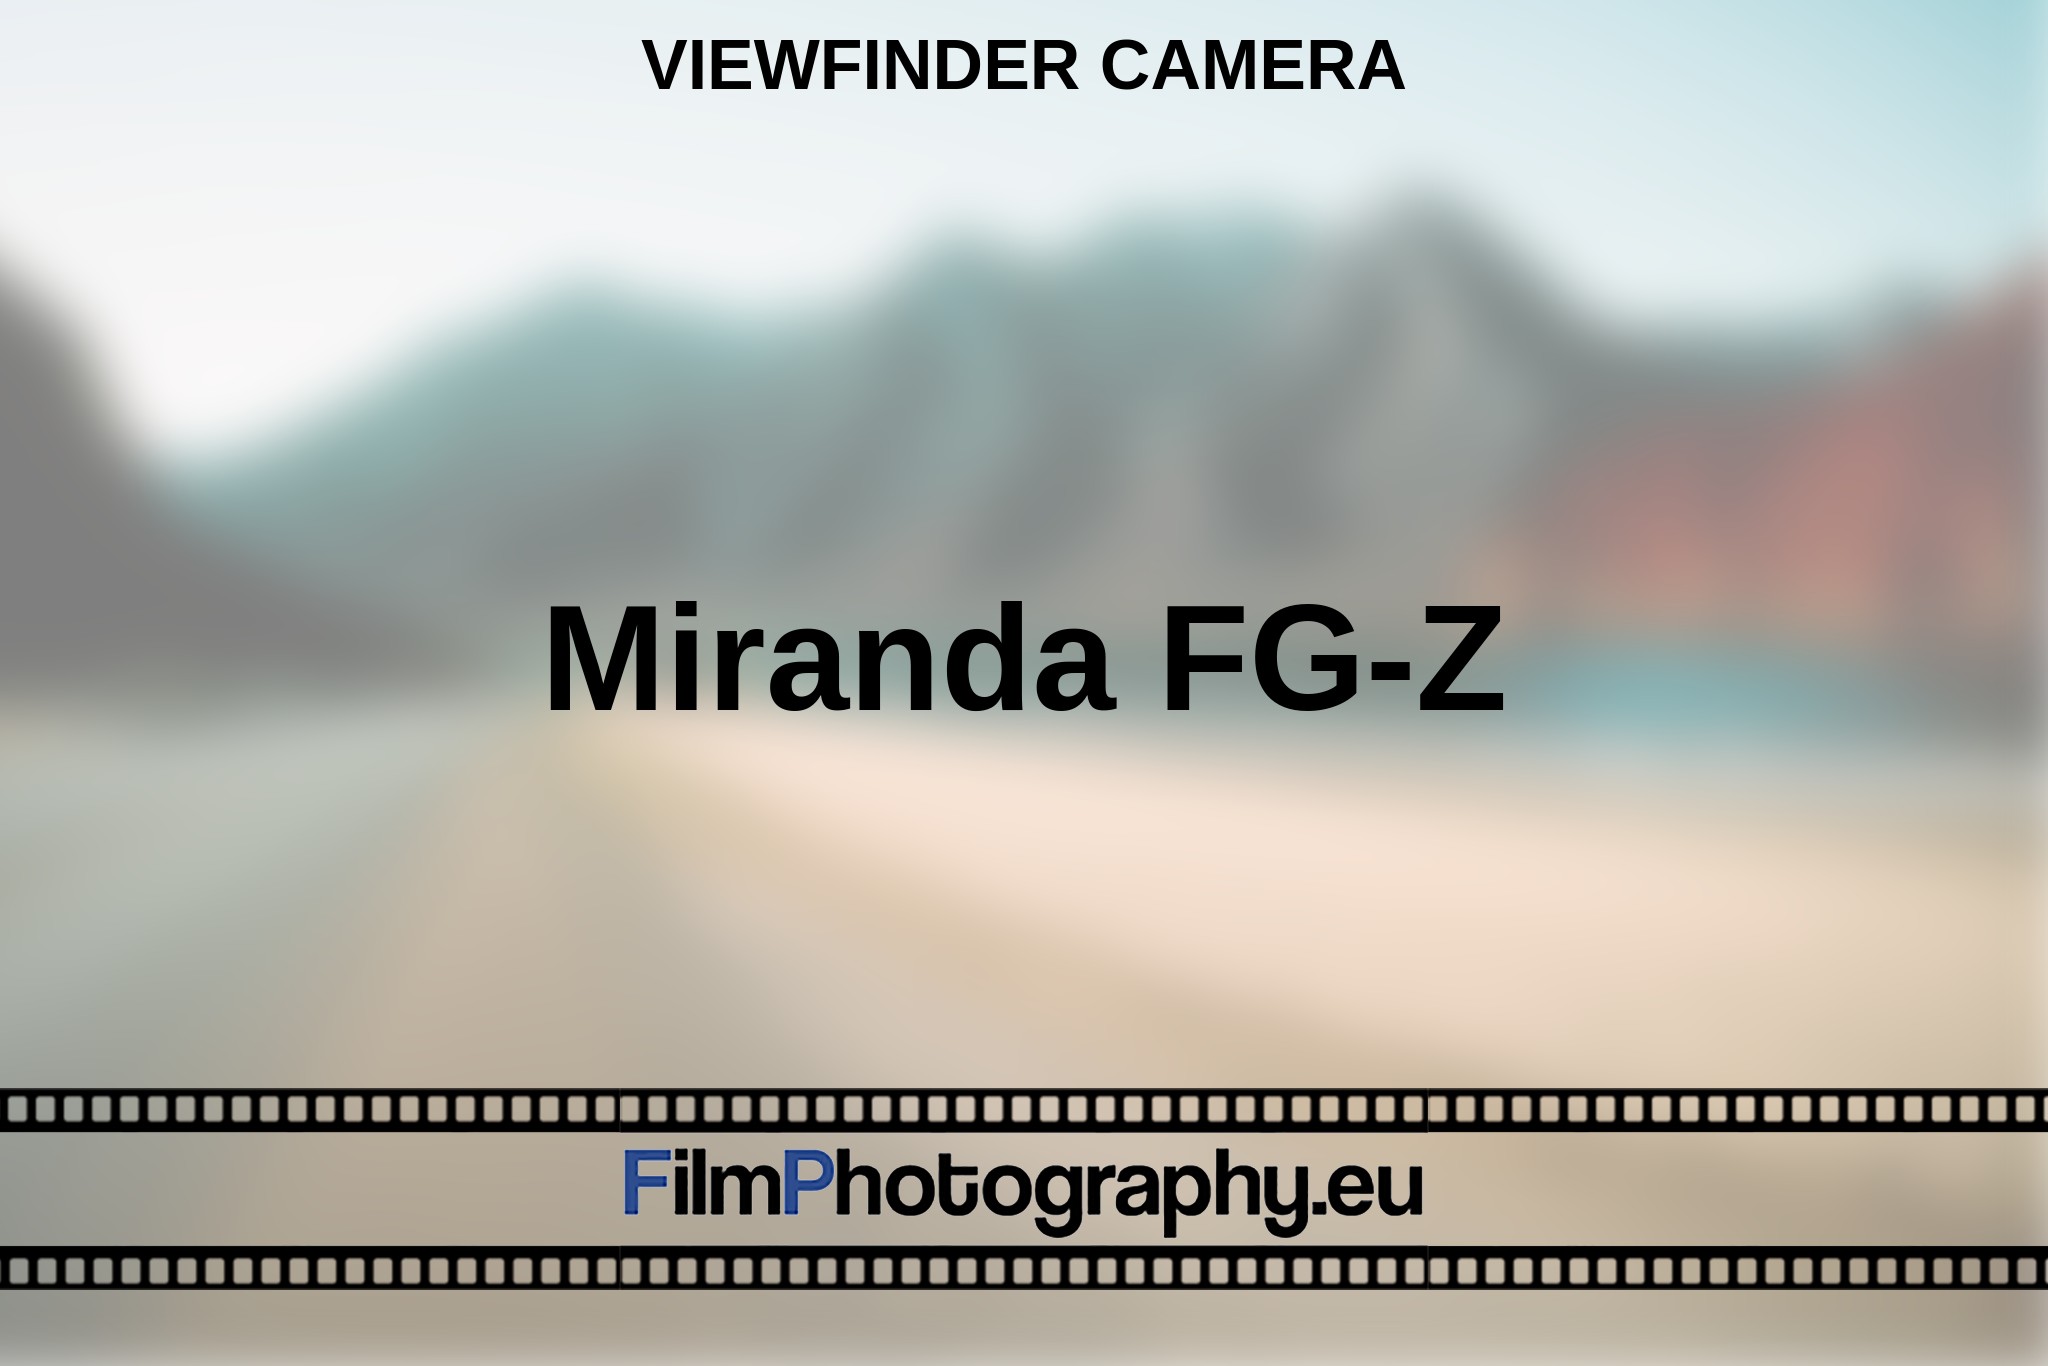 miranda-fg-z-viewfinder-camera-en-bnv.jpg